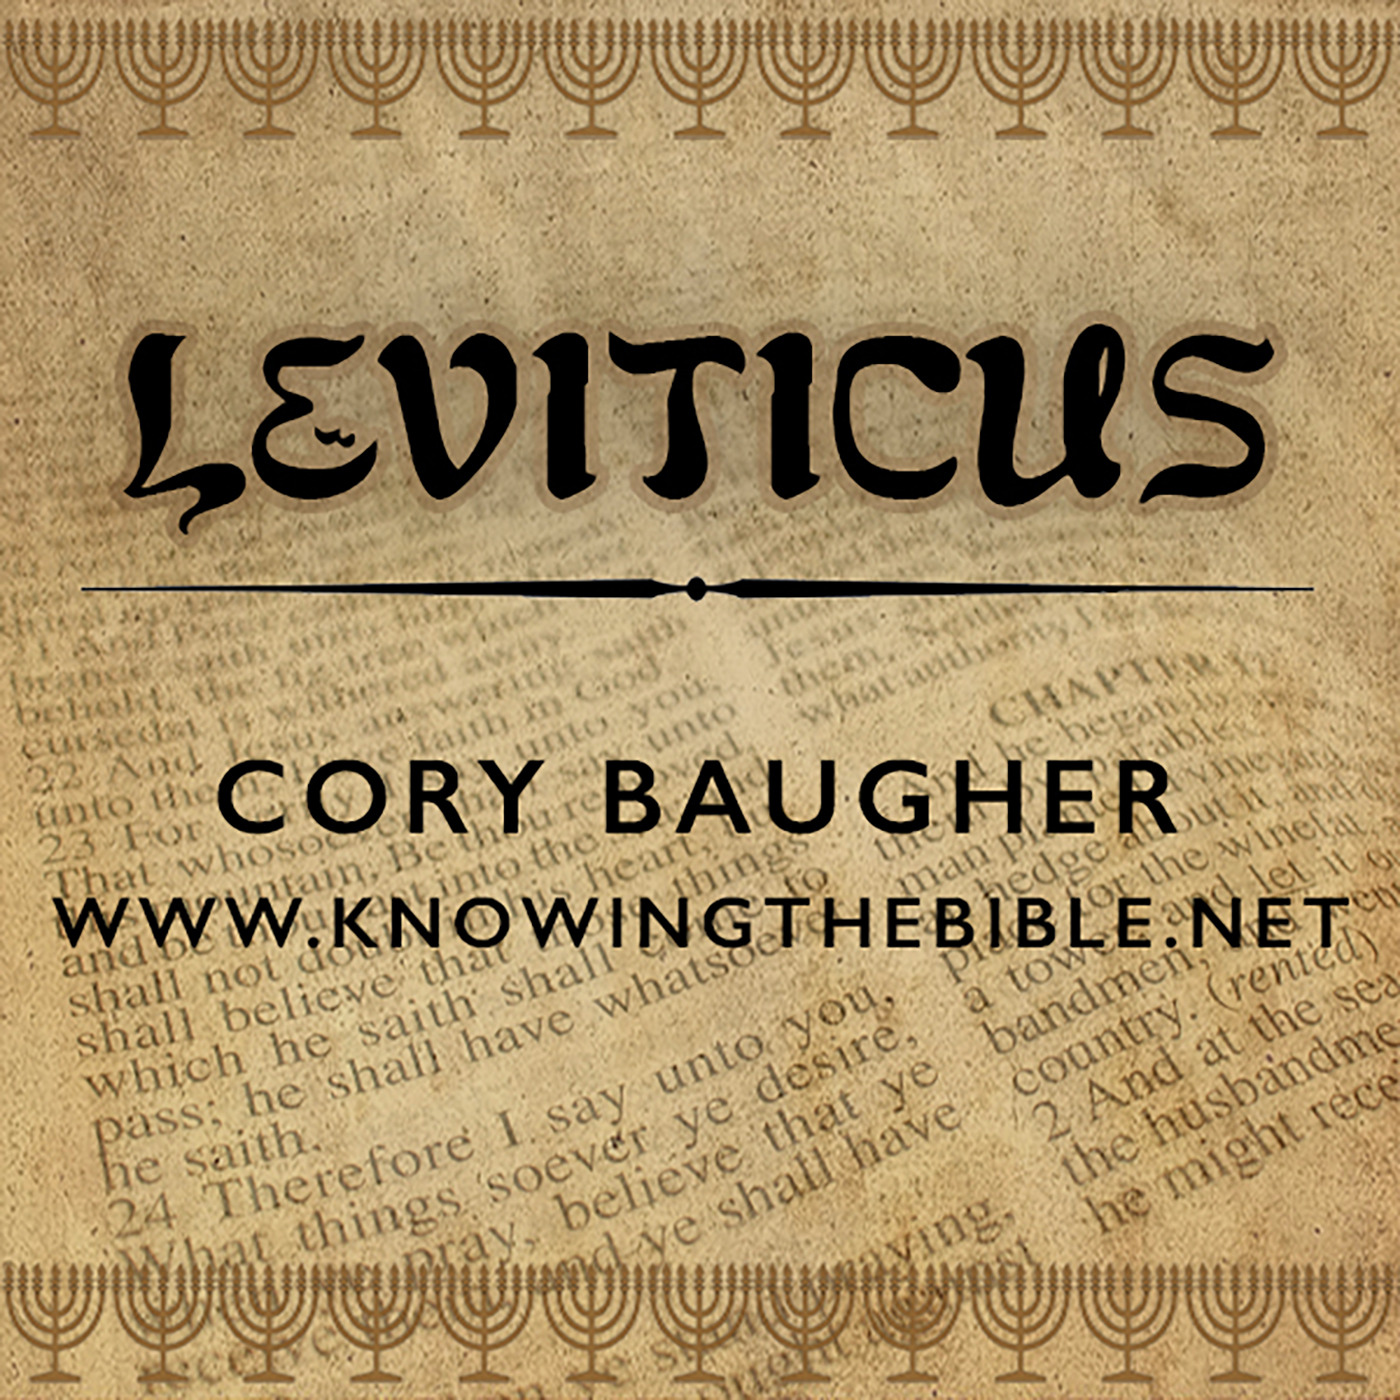 Leviticus 16:1-34